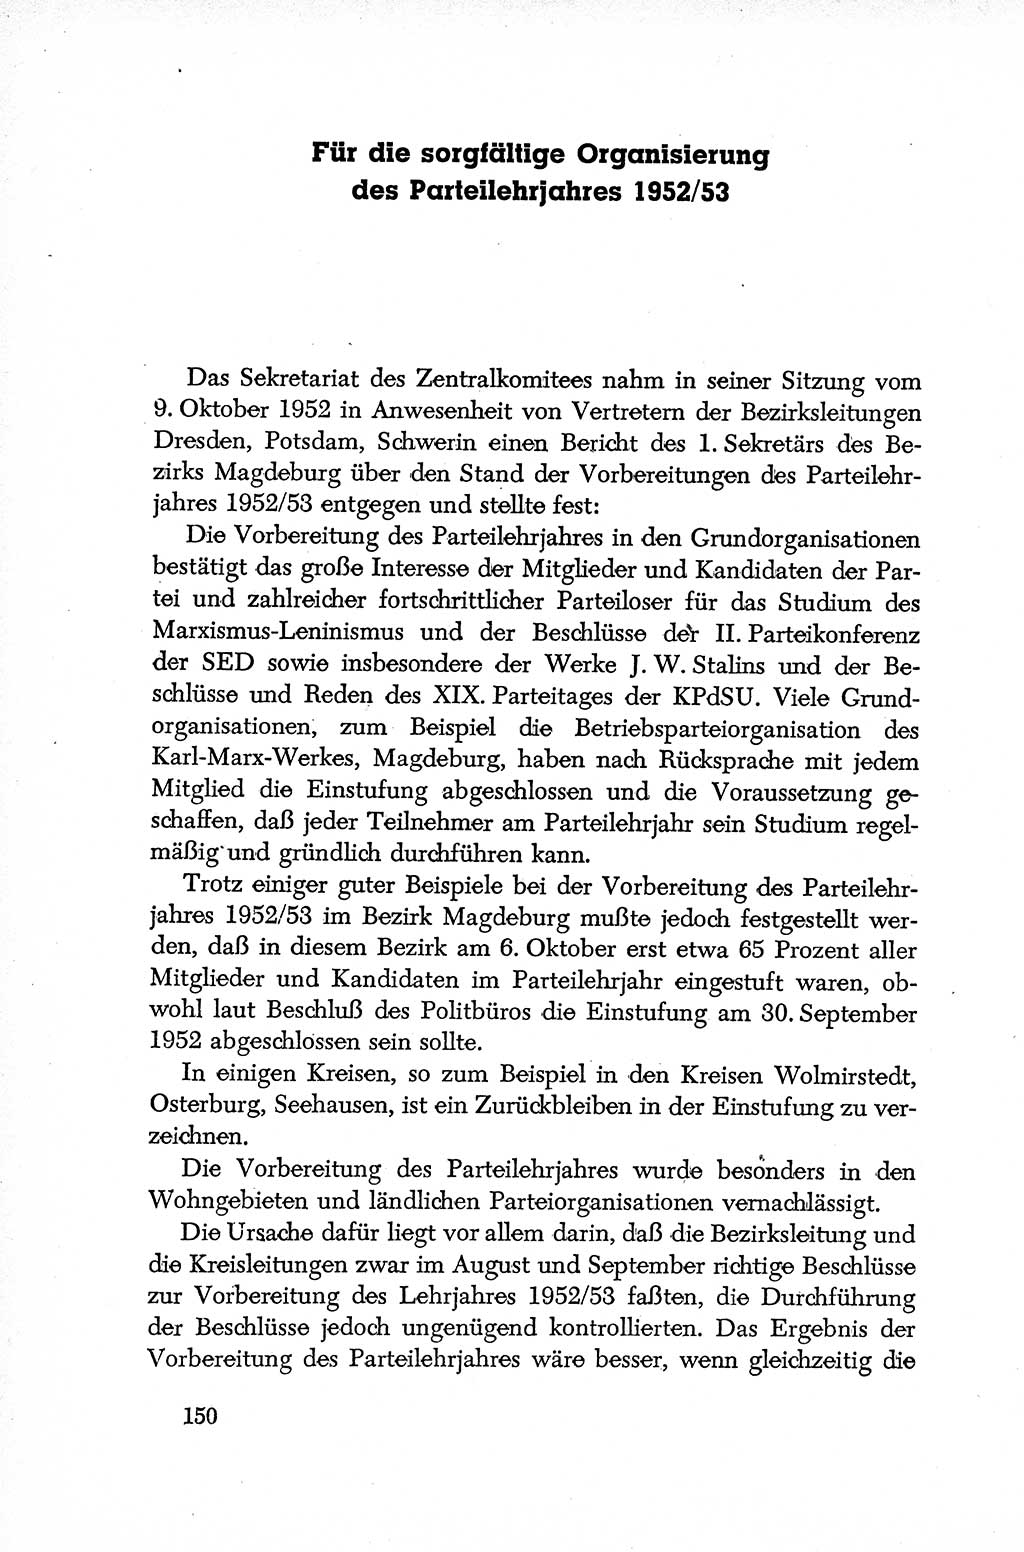 Dokumente der Sozialistischen Einheitspartei Deutschlands (SED) [Deutsche Demokratische Republik (DDR)] 1952-1953, Seite 150 (Dok. SED DDR 1952-1953, S. 150)